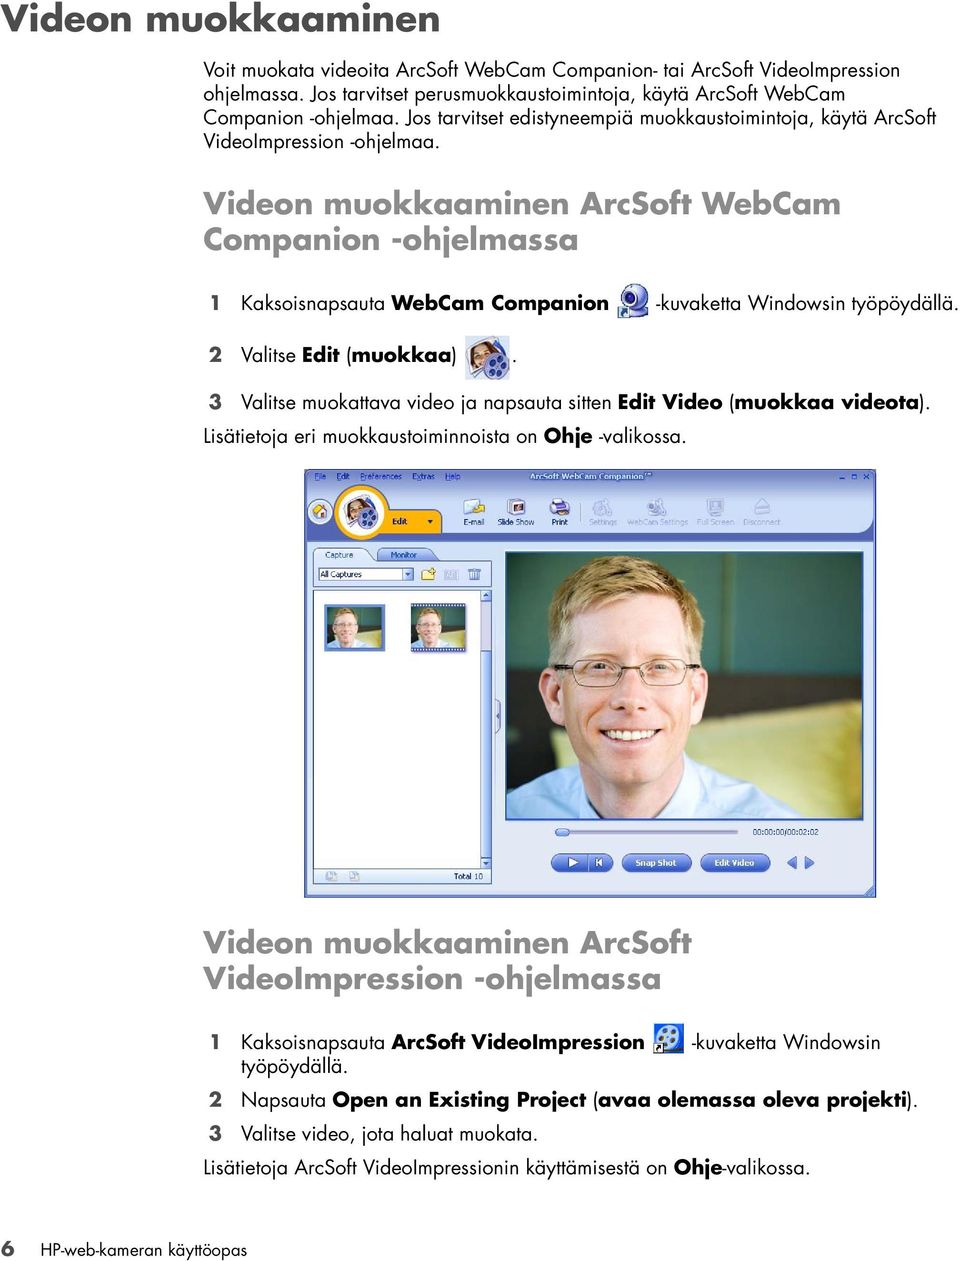 Videon muokkaaminen ArcSoft WebCam Companion -ohjelmassa 1 Kaksoisnapsauta WebCam Companion -kuvaketta Windowsin työpöydällä. 2 Valitse Edit (muokkaa).